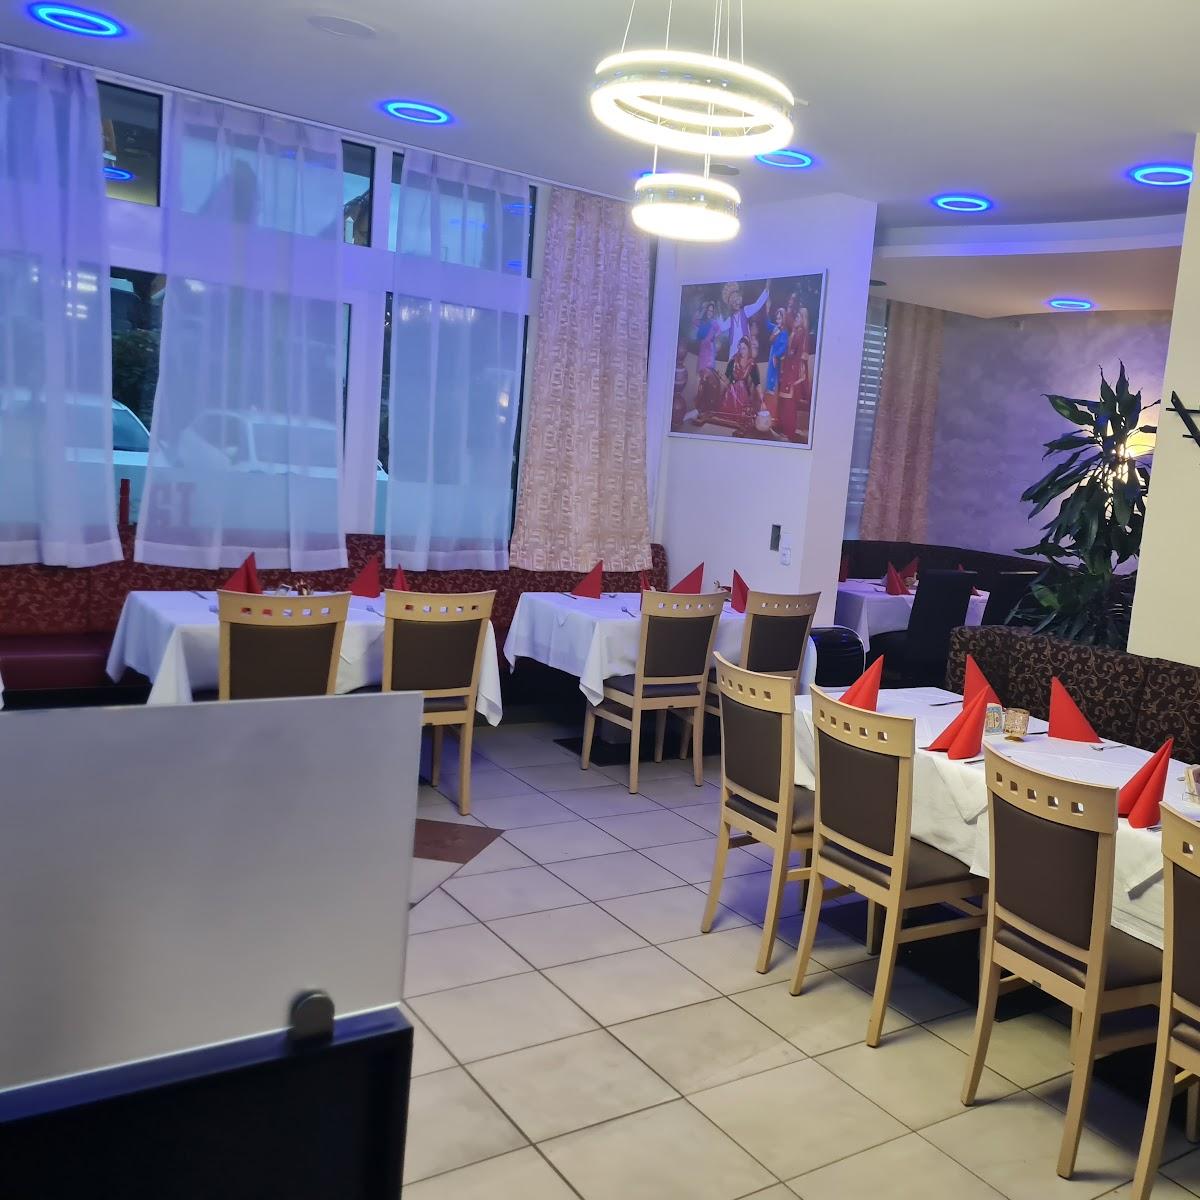 Restaurant "Taj - Indisches Spezialitätenrestaurant" in Gersthofen